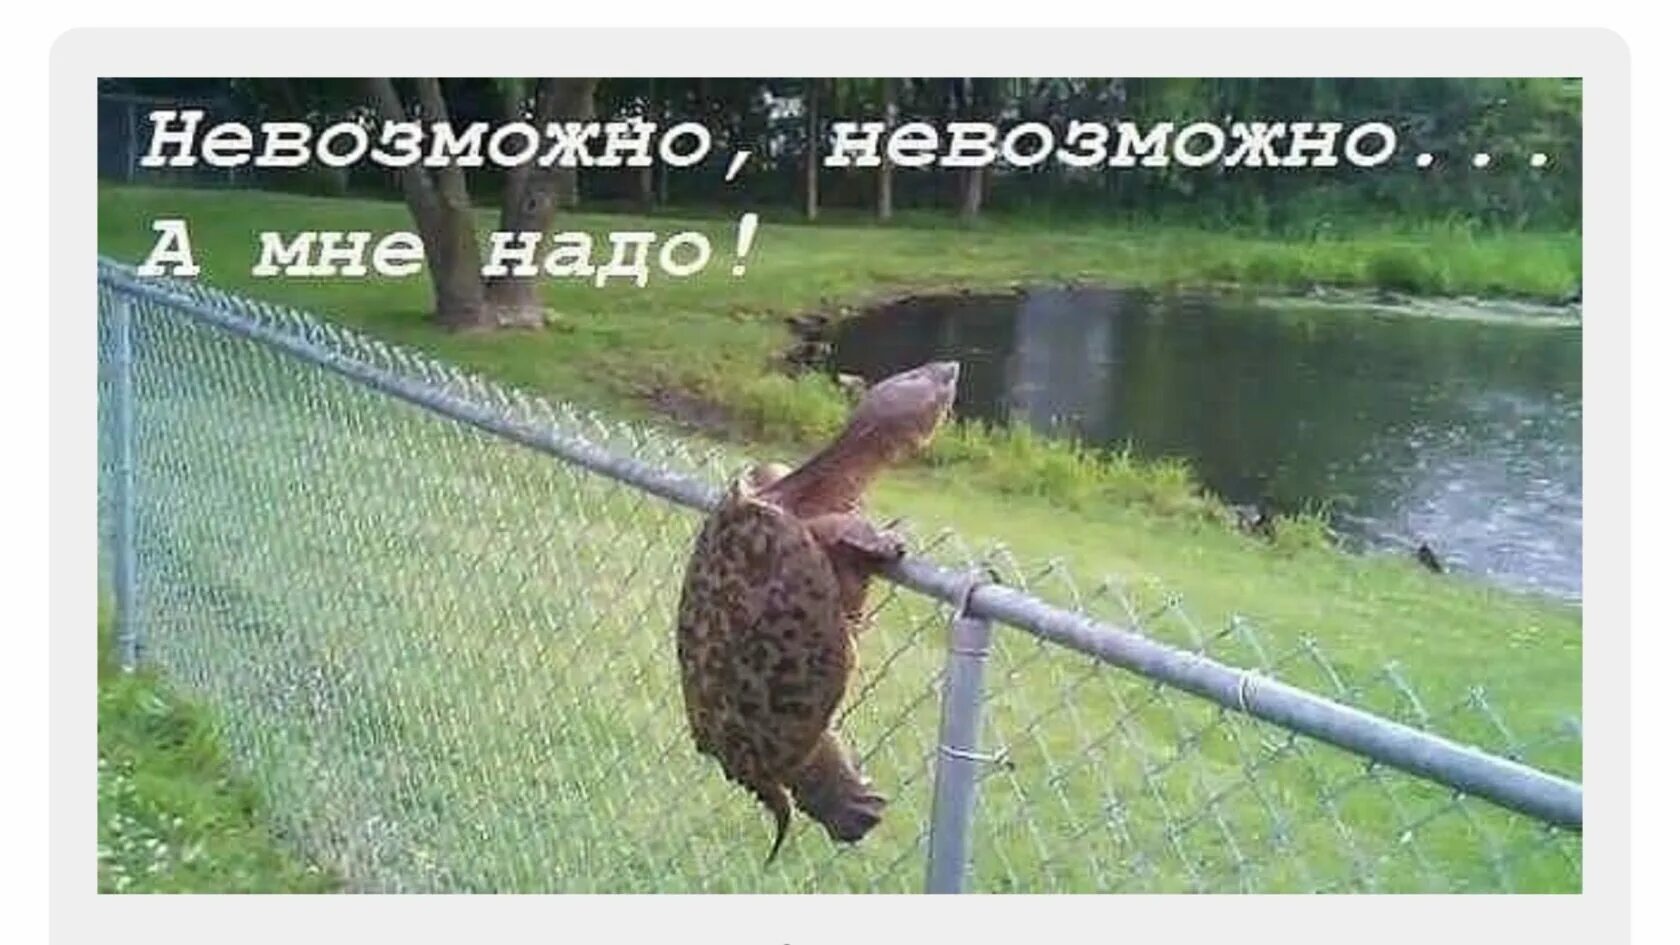 Снятся препятствия. Черепаха через забор. Сквозь преграды. Черепаха перелезает через забор. Преодоление препятствий приколы.